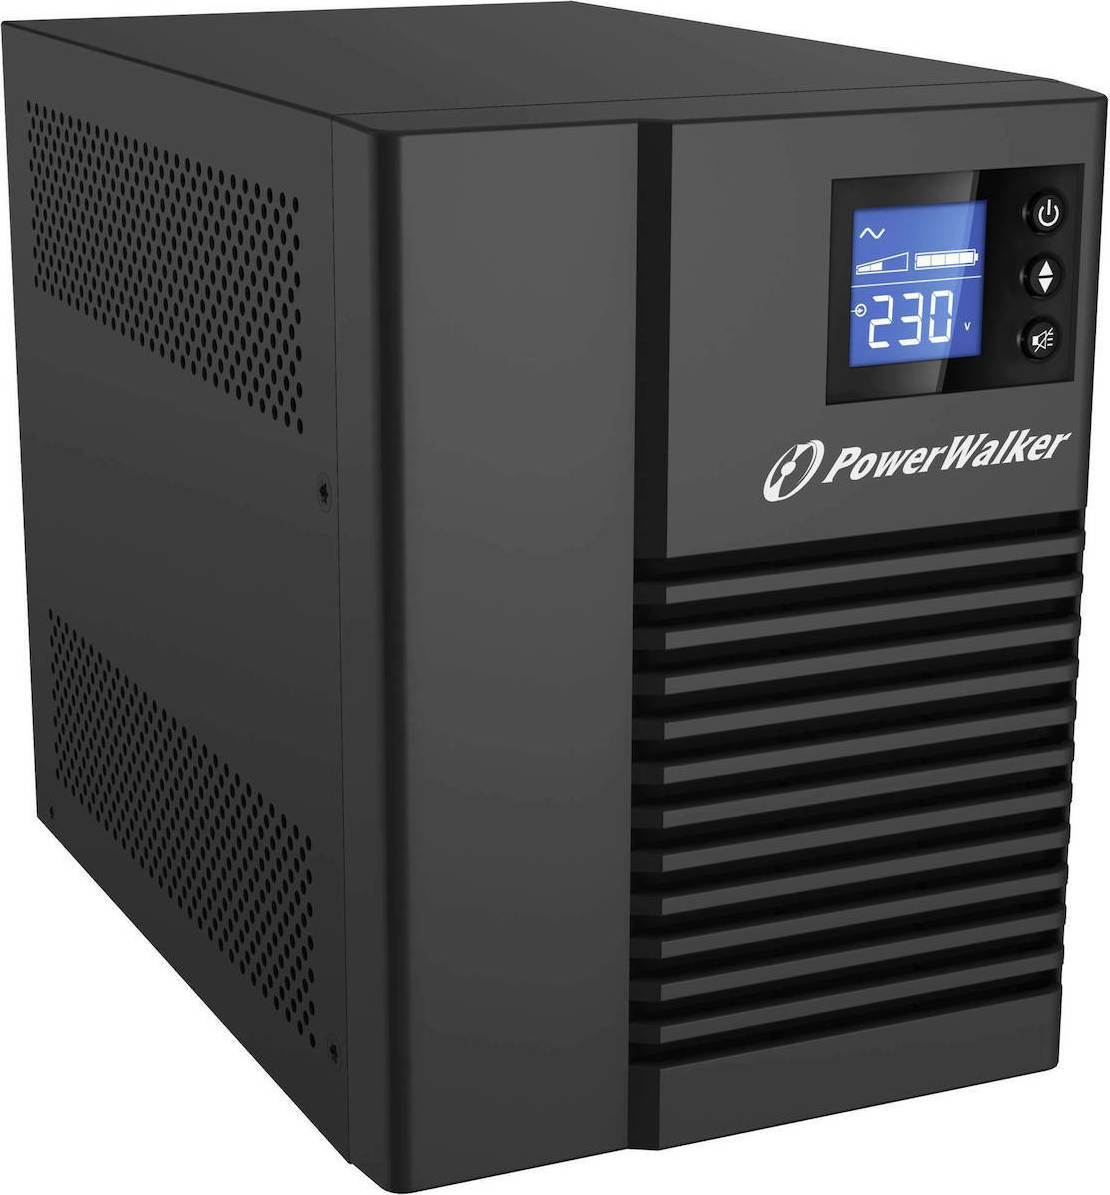 POWERWALKER UPS VI 750T/HID(PS) (10121007) 750 VALine Interactive